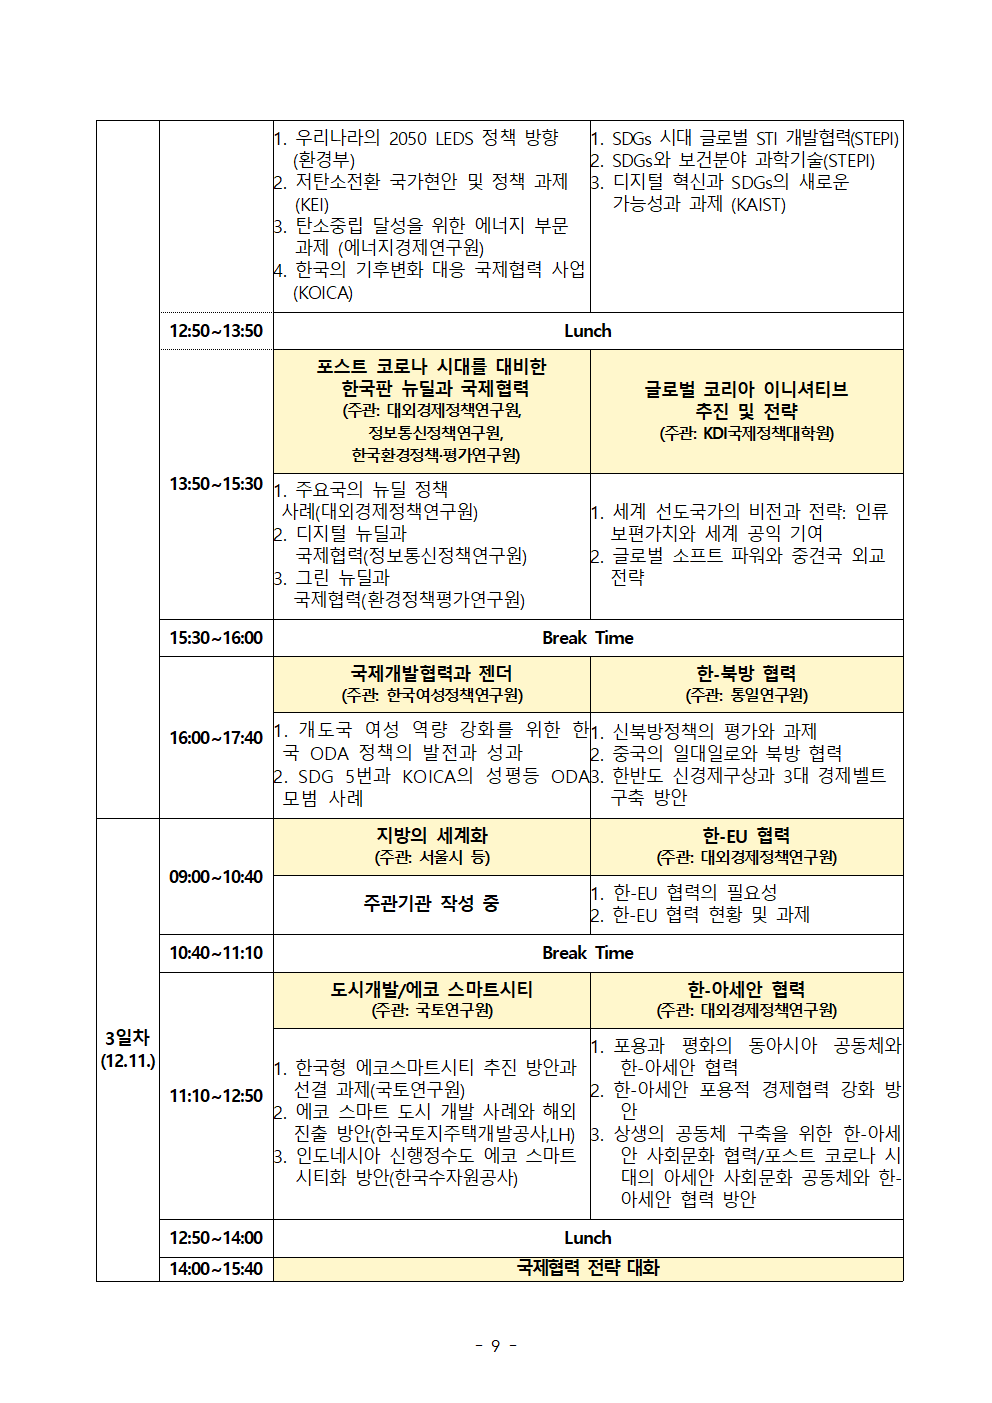 첨부파일참고 : [경제인문사회연구회]'2020 글로벌 코리아 박람회’ 개최.pdf